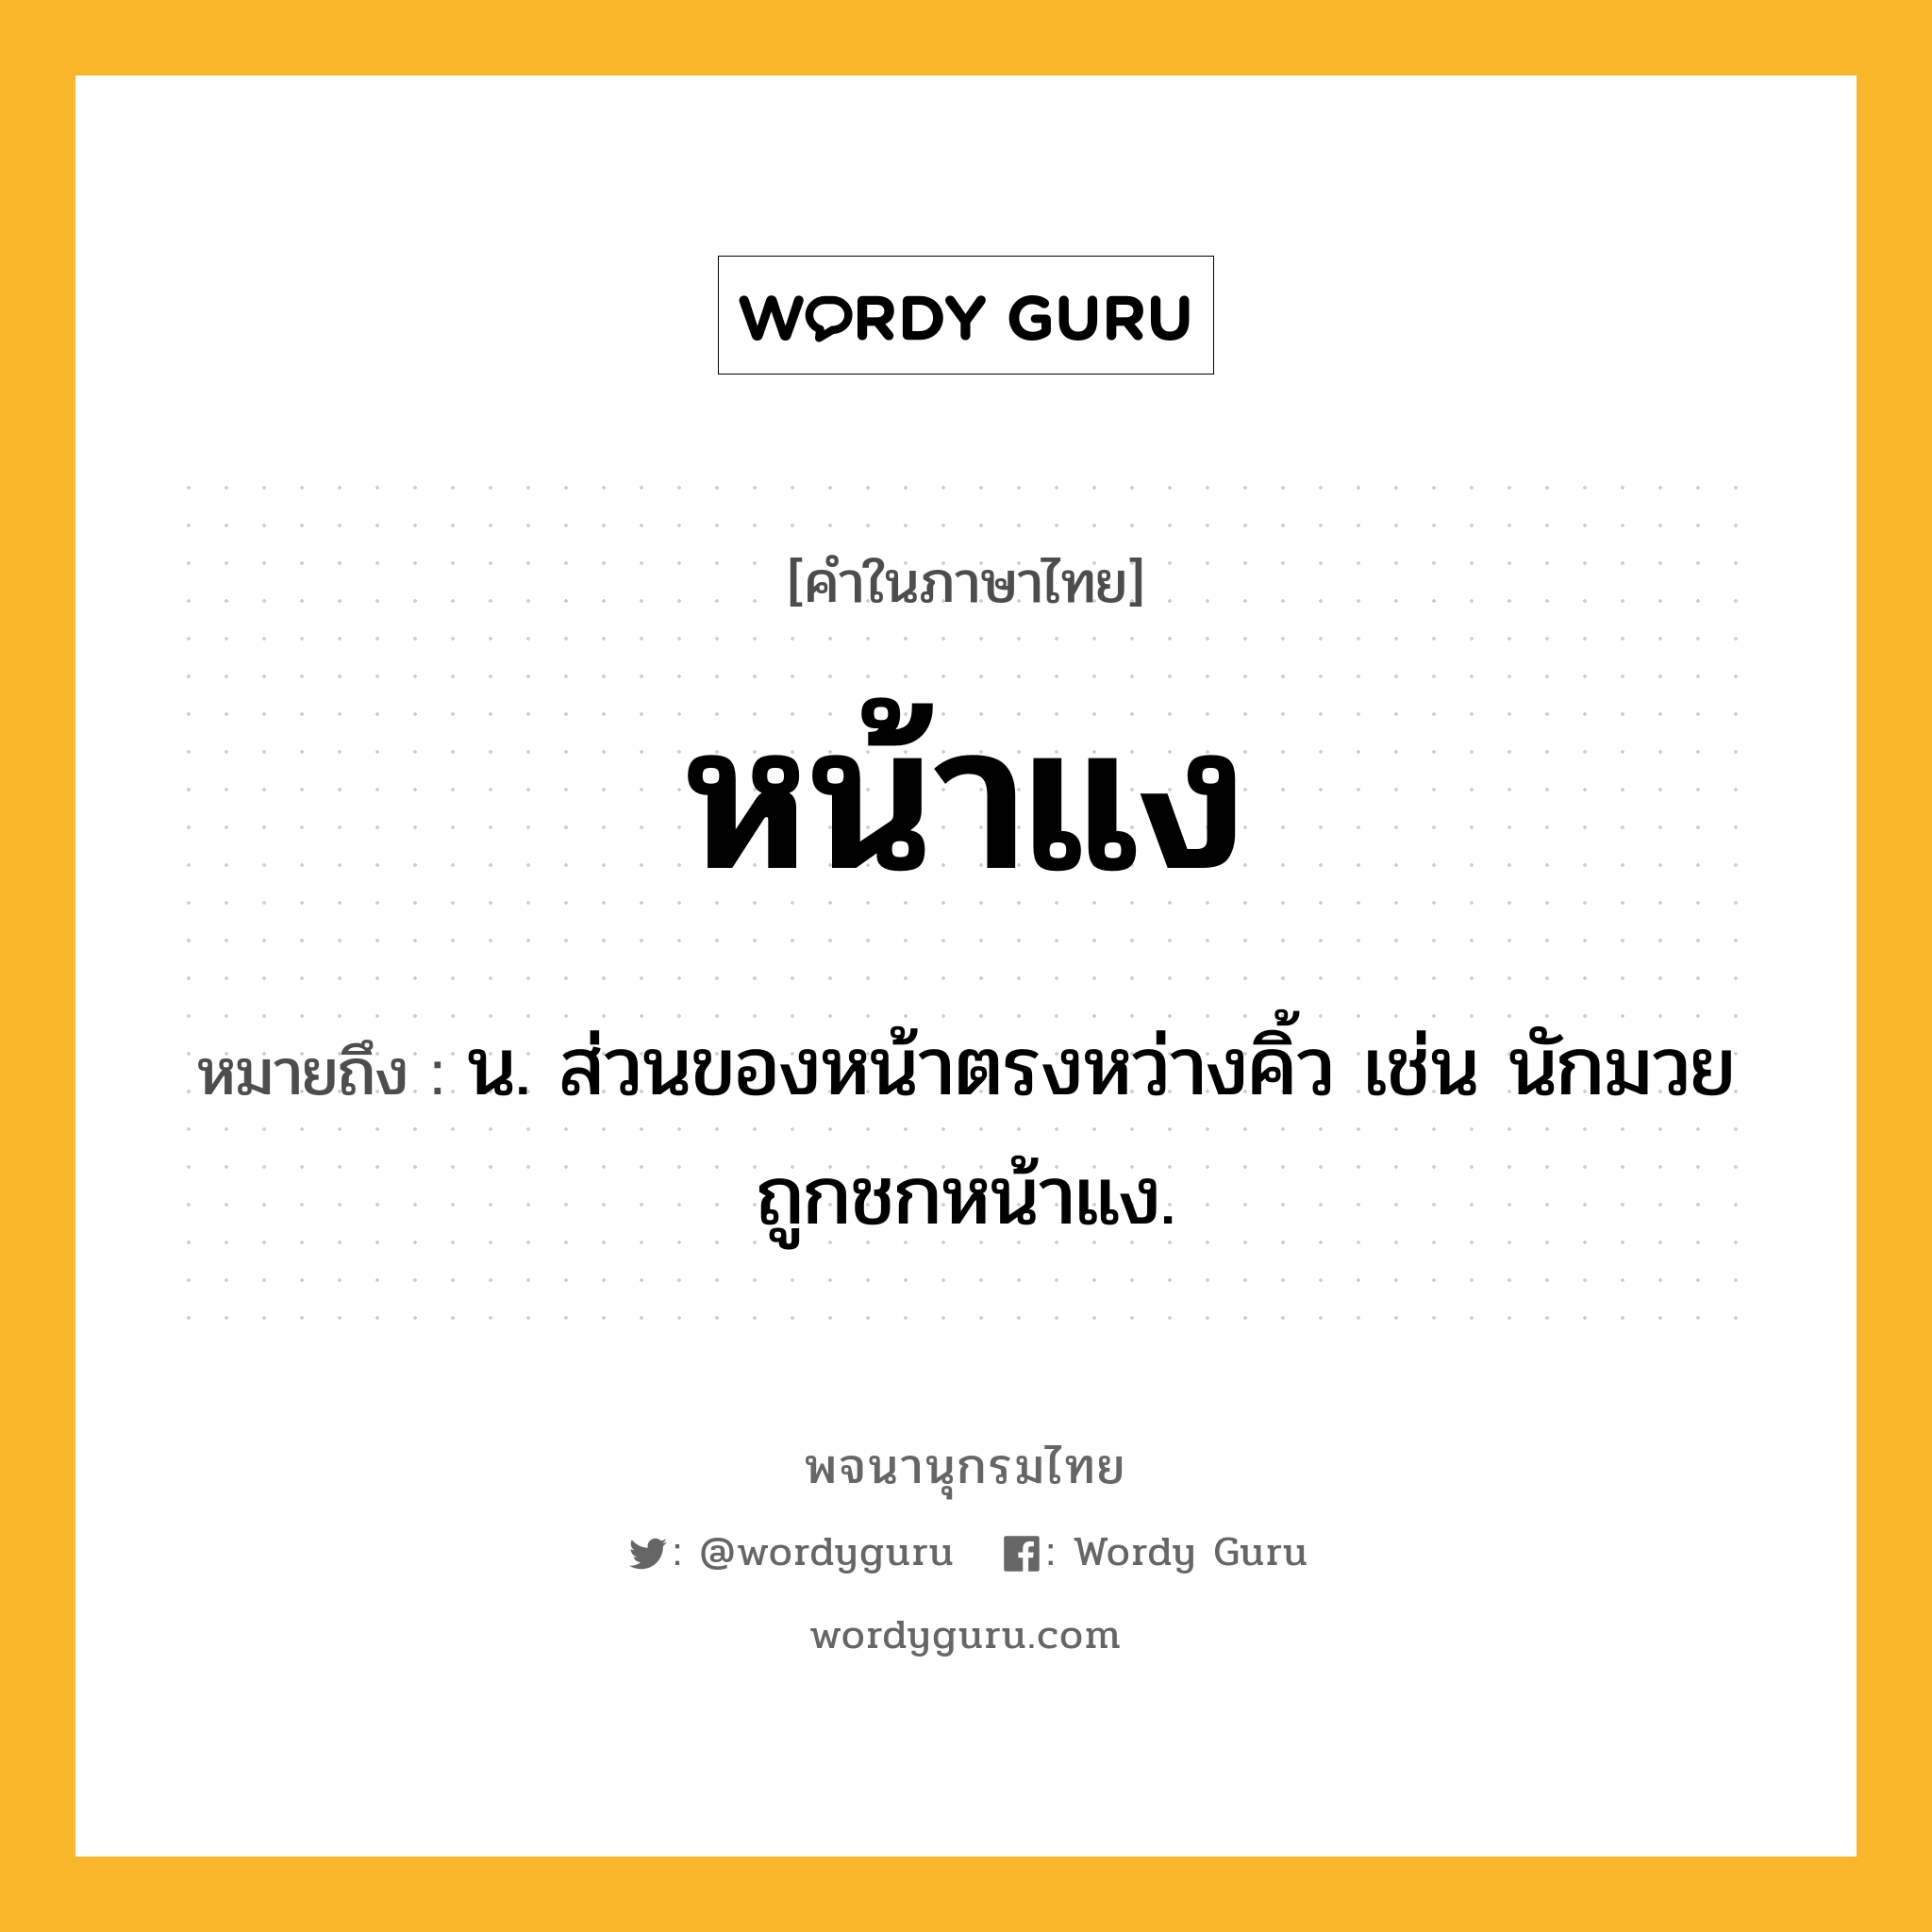 หน้าแง หมายถึงอะไร?, คำในภาษาไทย หน้าแง หมายถึง น. ส่วนของหน้าตรงหว่างคิ้ว เช่น นักมวยถูกชกหน้าแง.